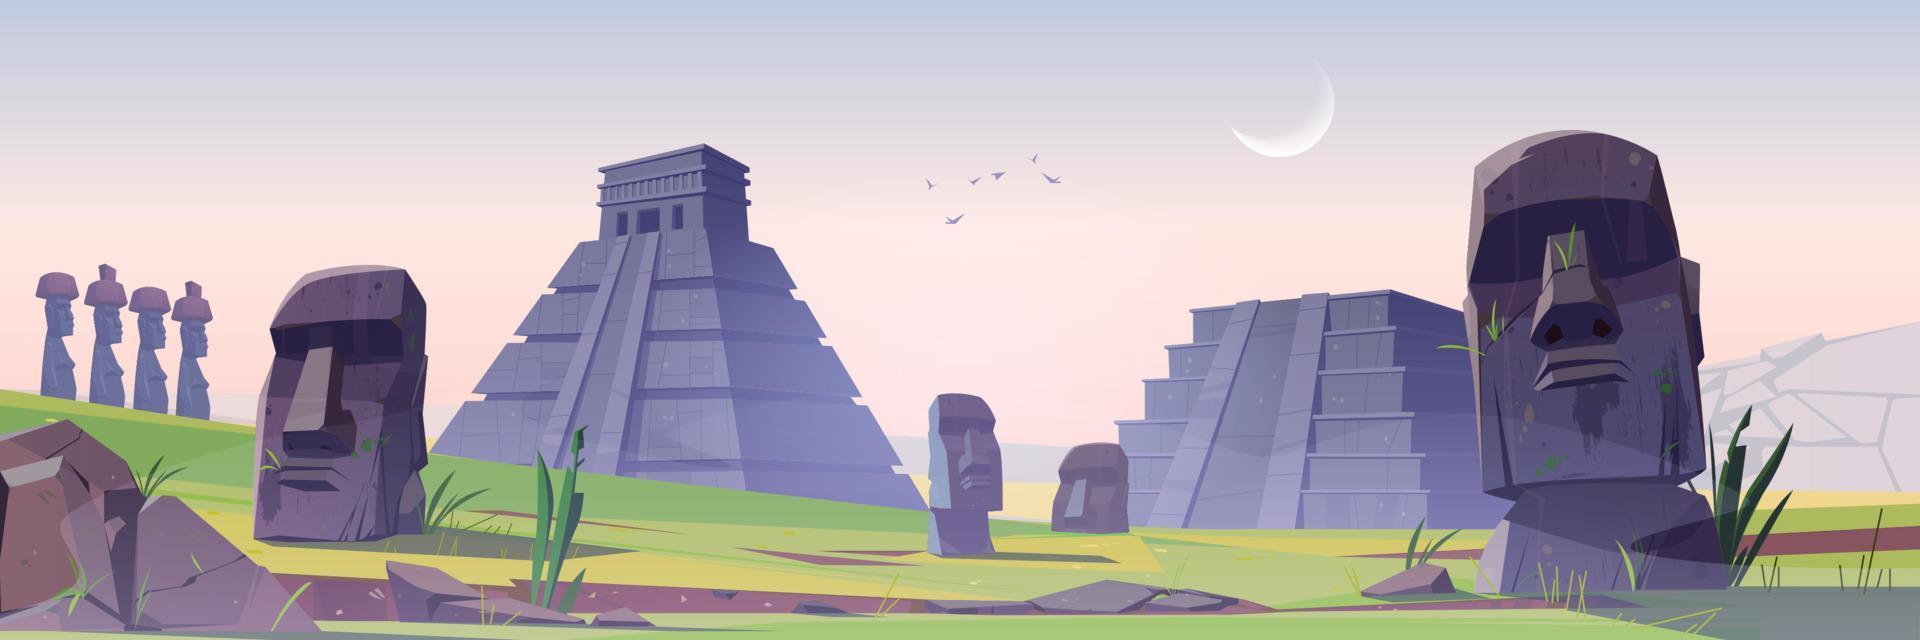 antigas pirâmides maias e monumentos de estátuas moai vetor